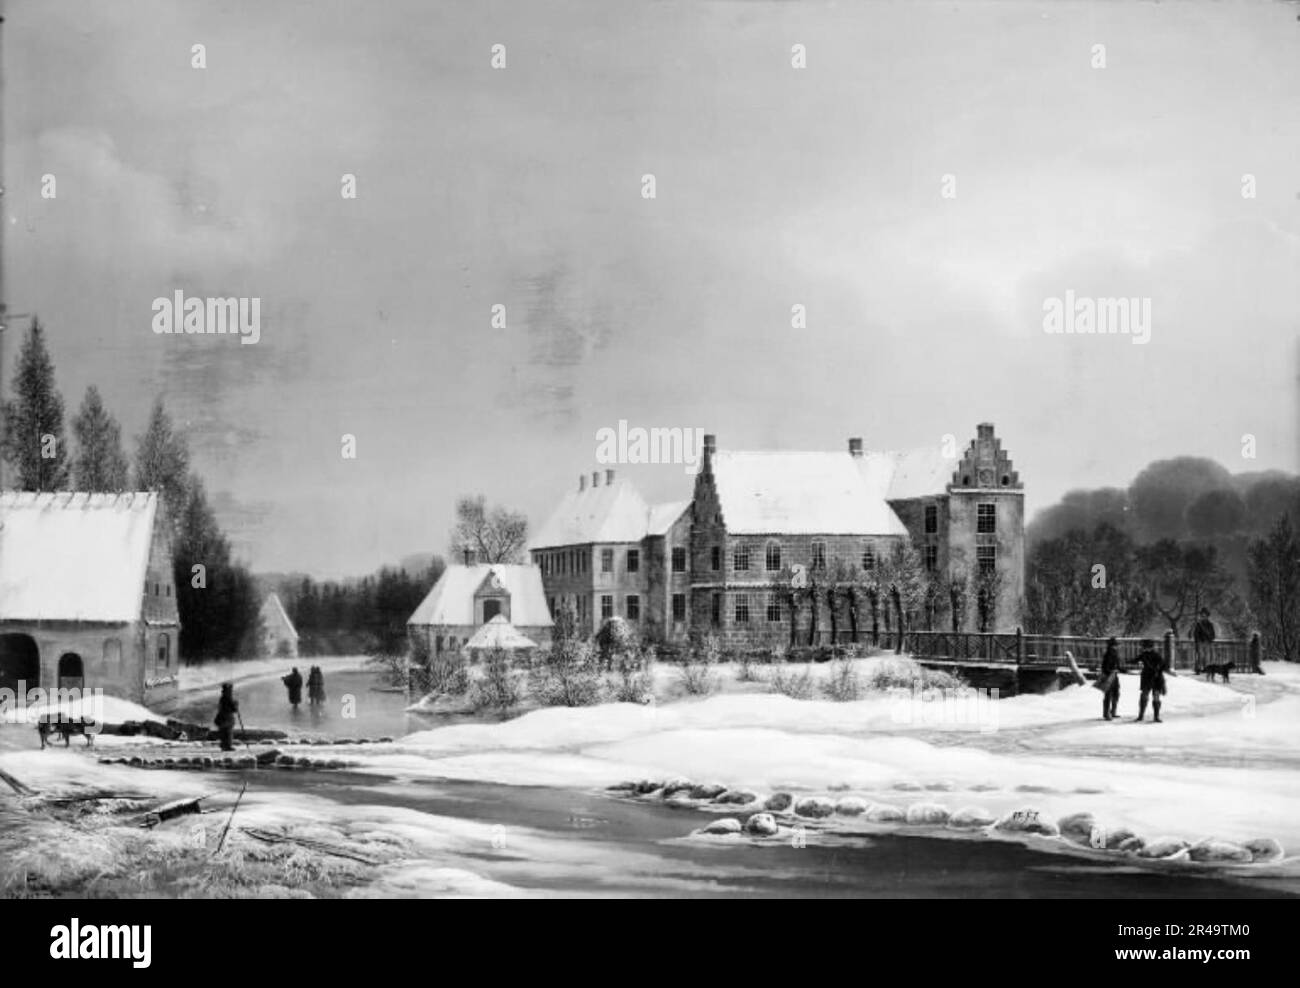 Vue sur le jardin principal de Lykkesholm, Funen, hiver 1834. Manoir datant de 1600 conçu par Domenicus Badiaz. Banque D'Images